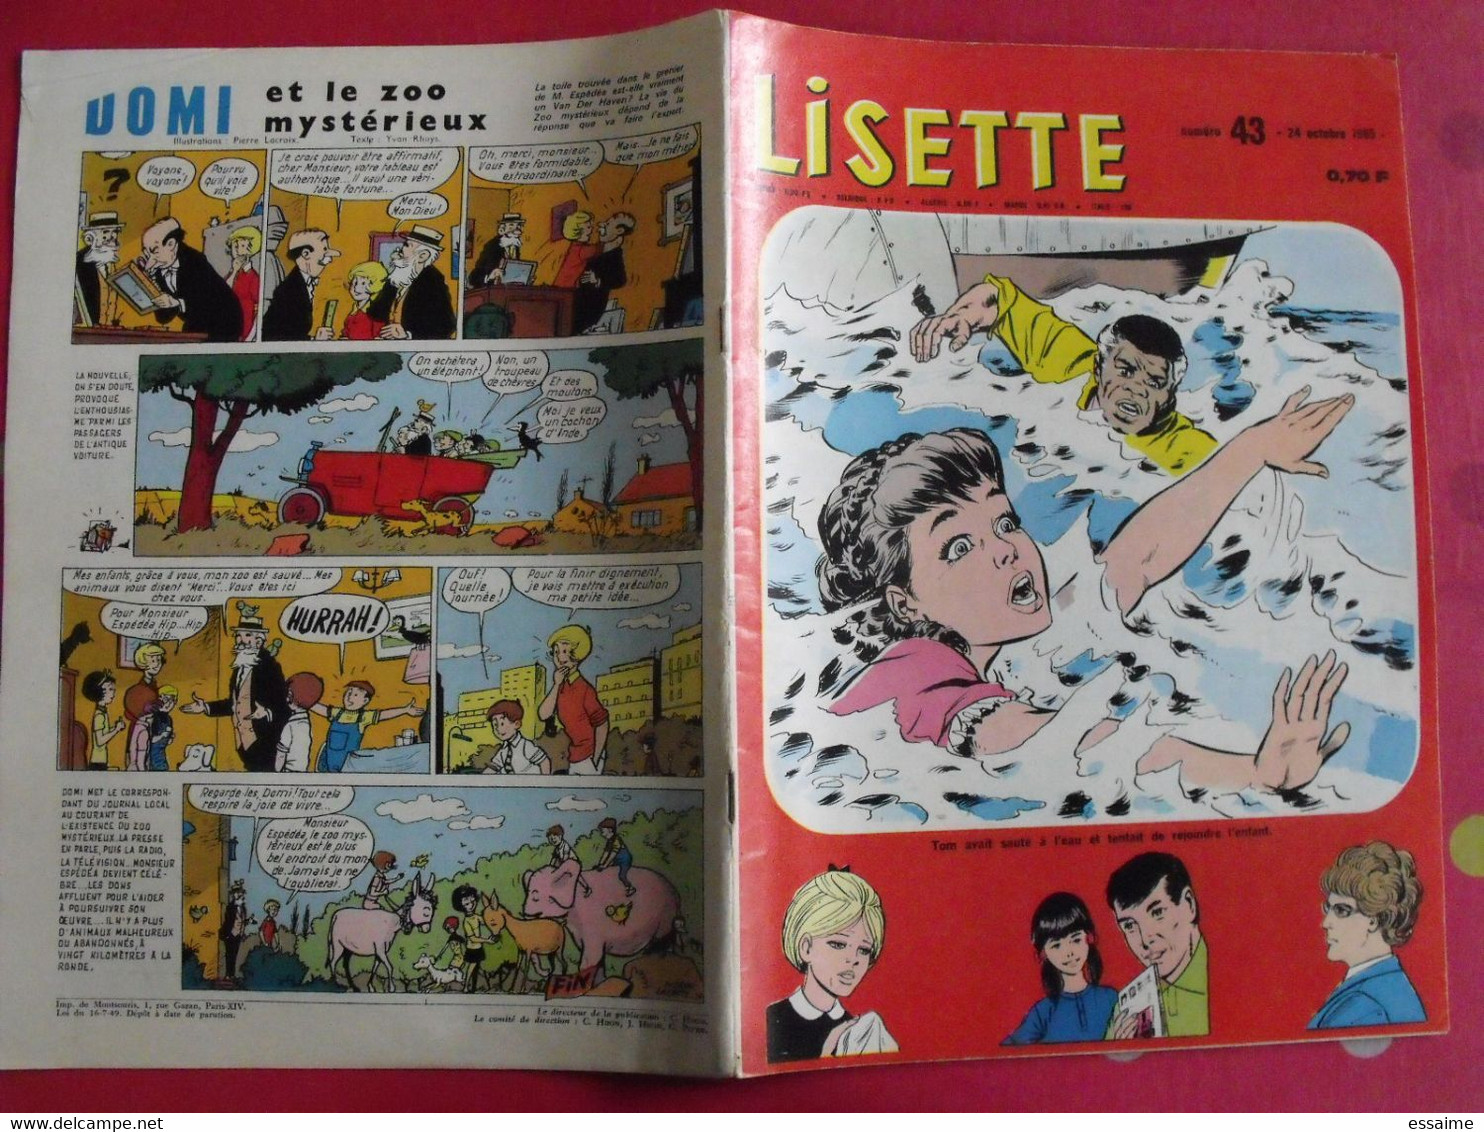 Lisette. 21 n° de 1965. lacroix lay tiky fusco francey marcello. à redécouvrir G.H.